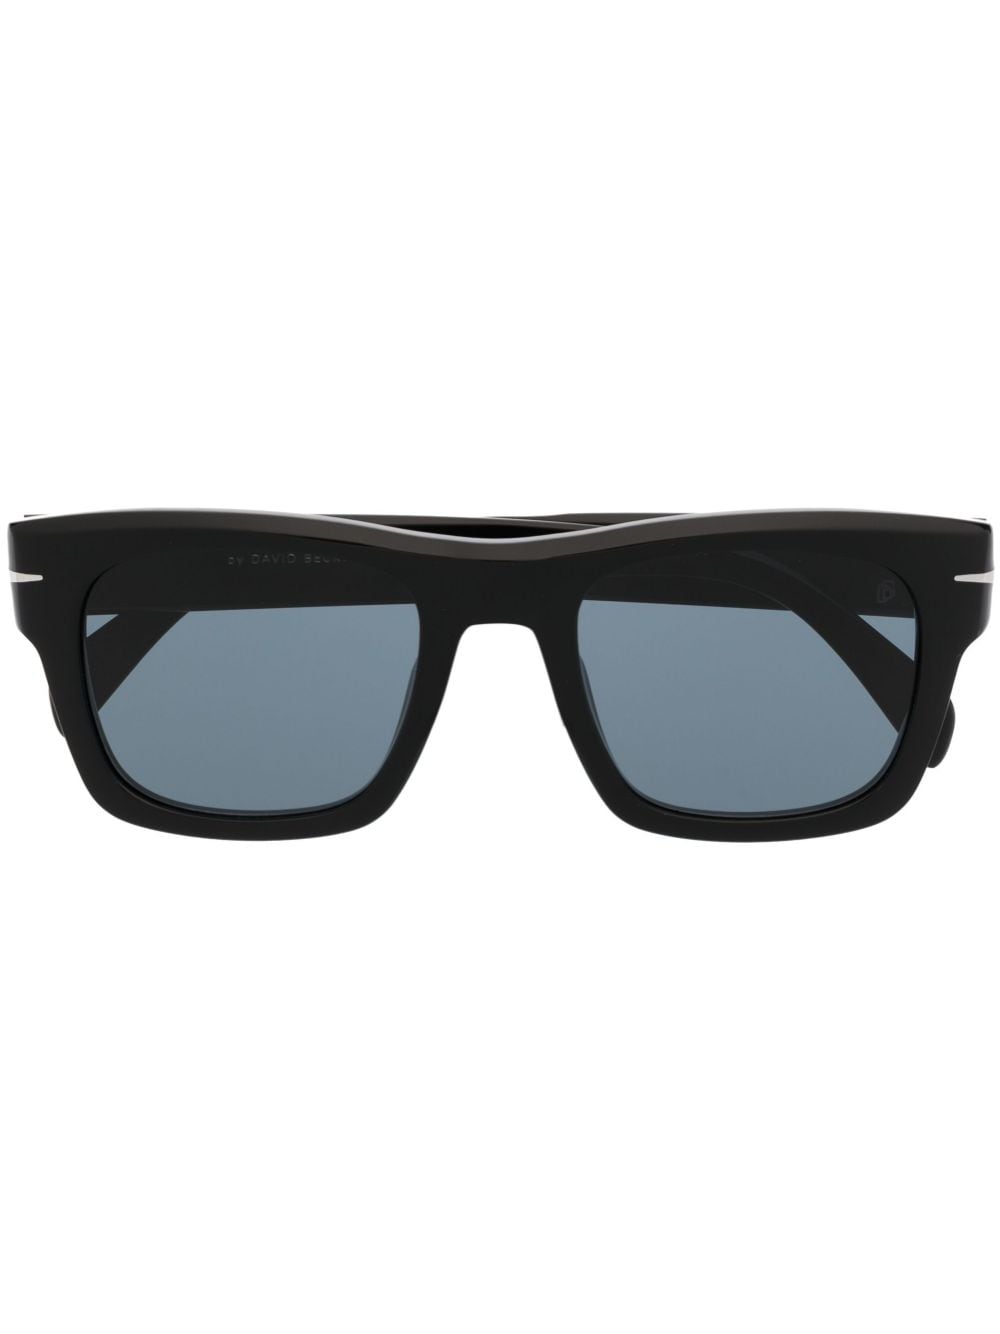 Eyewear by David Beckham square-frame sunglasses - Black von Eyewear by David Beckham